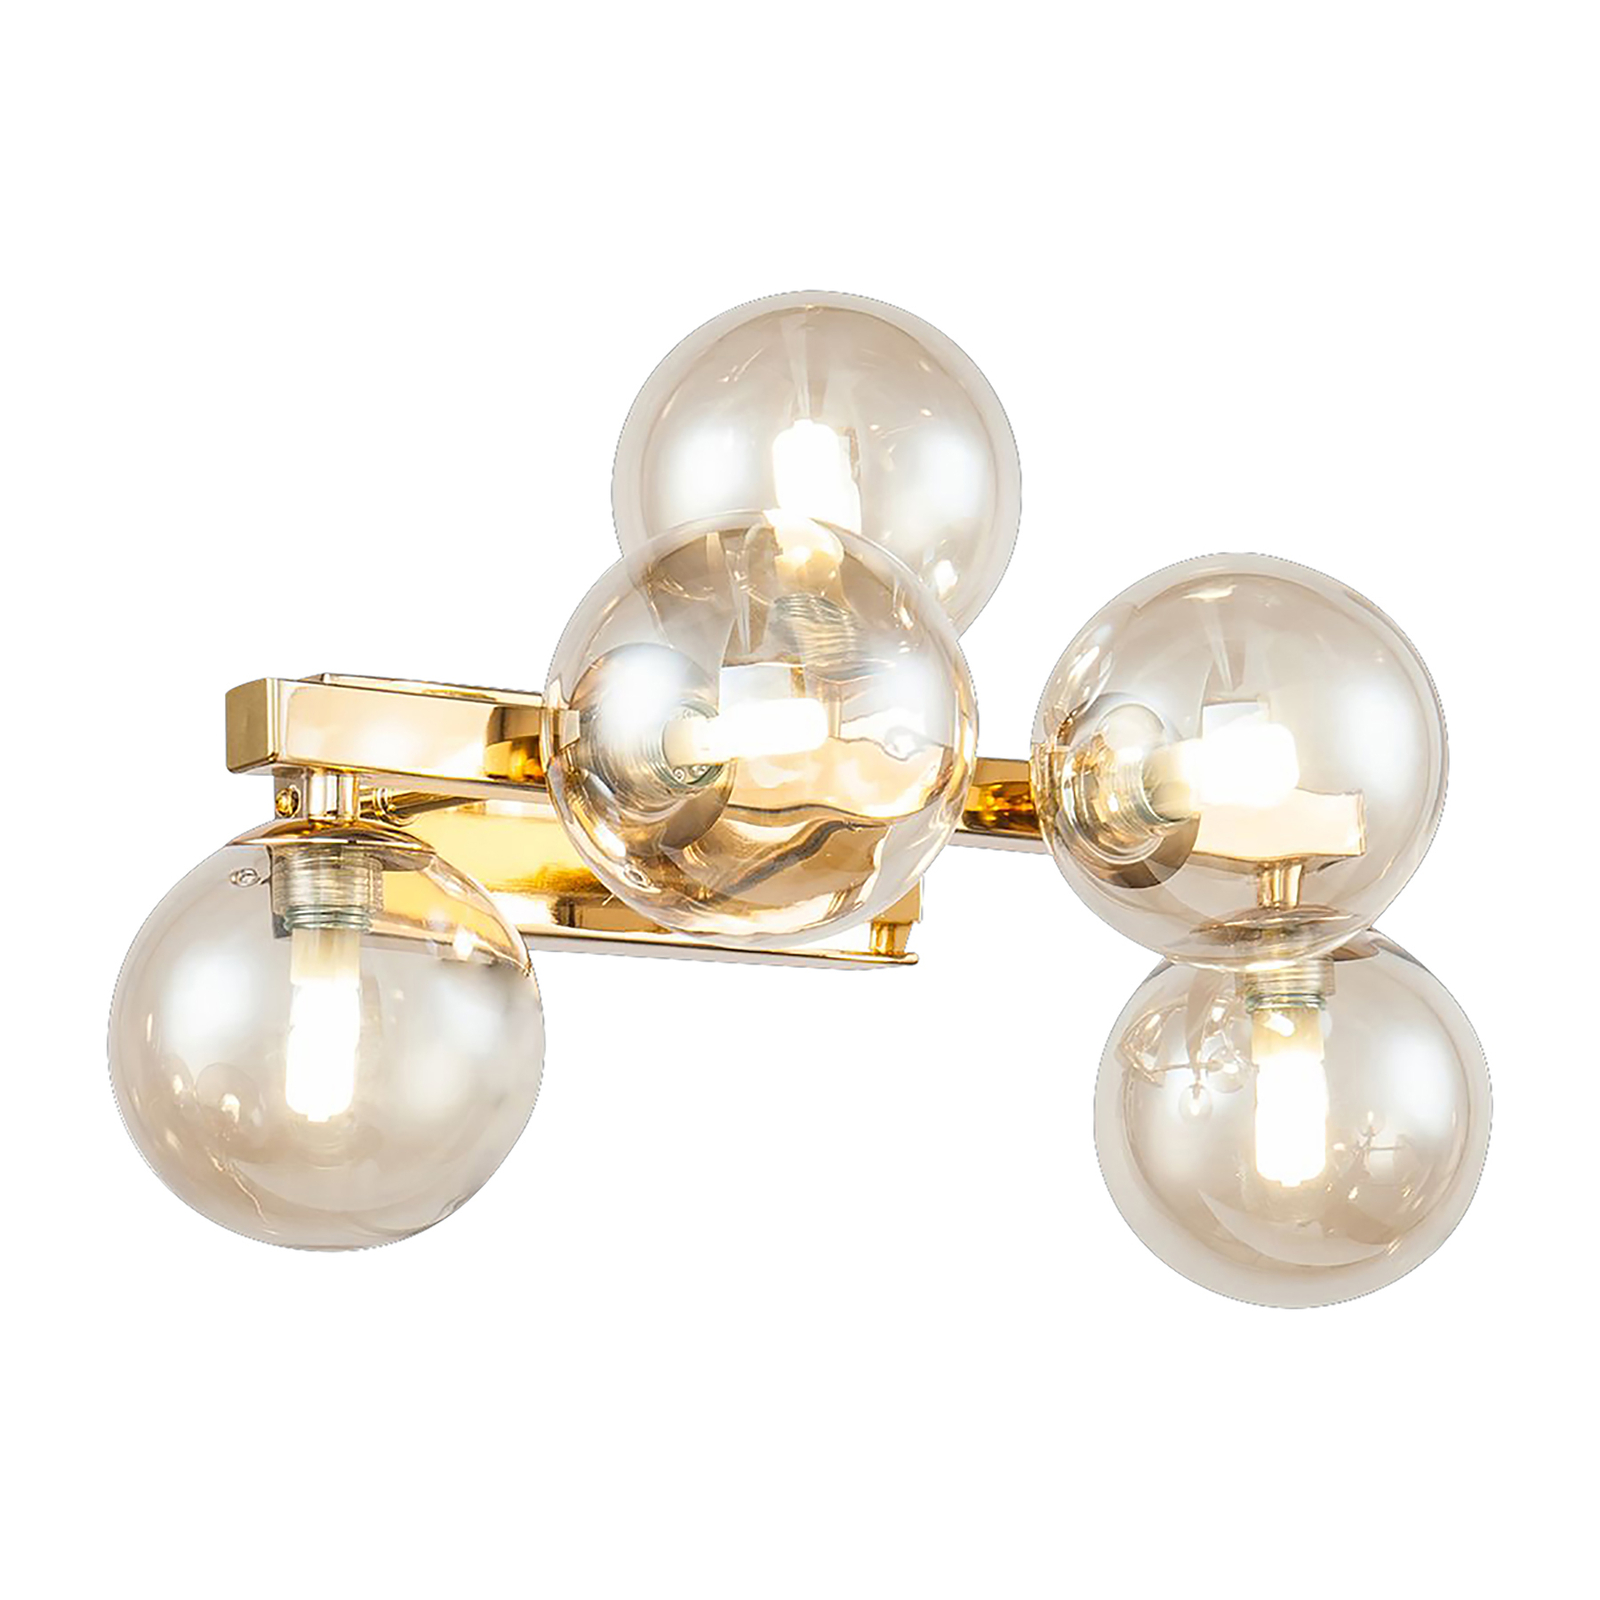 Maytoni Dallas wall light with 5 glass globes gold